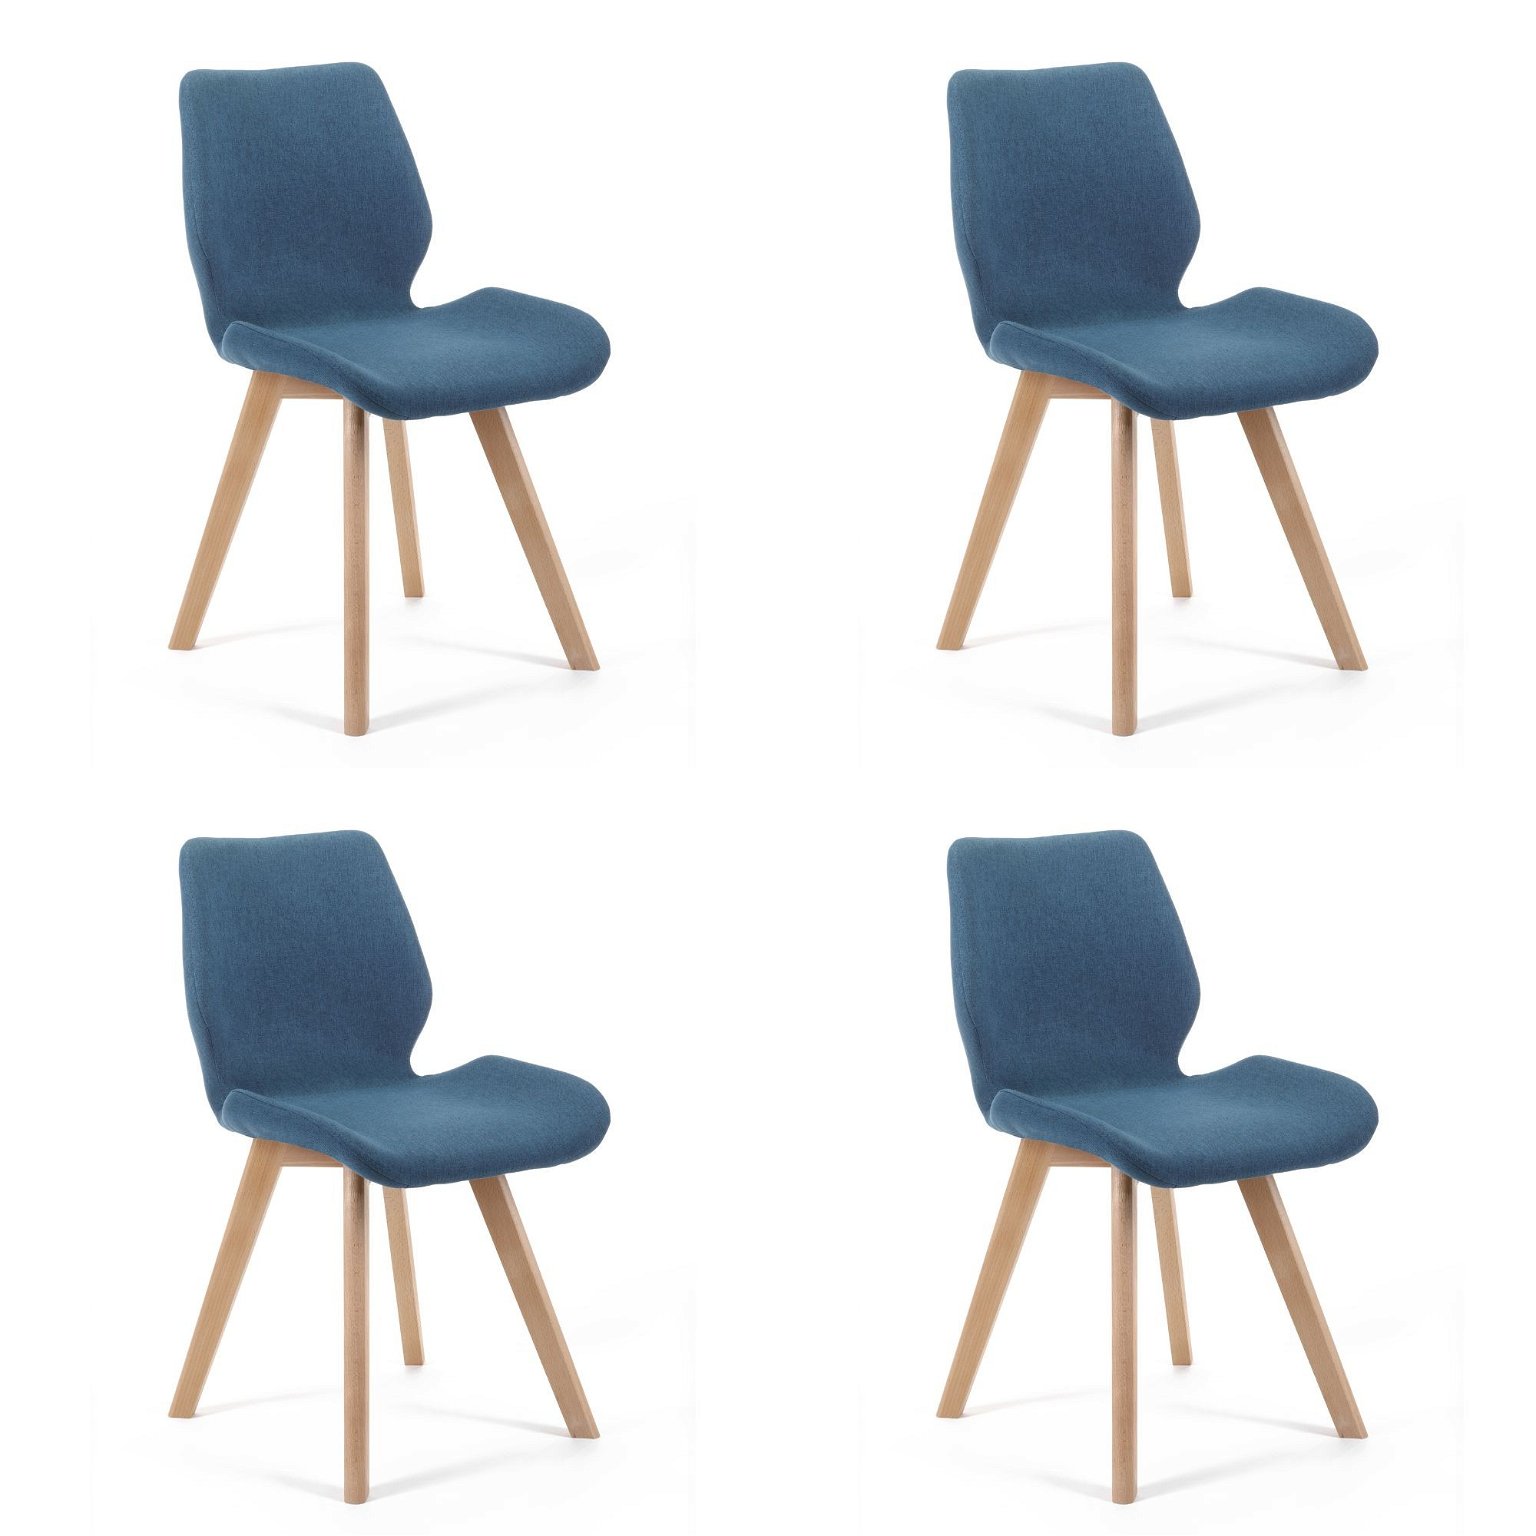 4-rių kėdžių komplektas SJ.0159, tamsiai mėlynas - 2